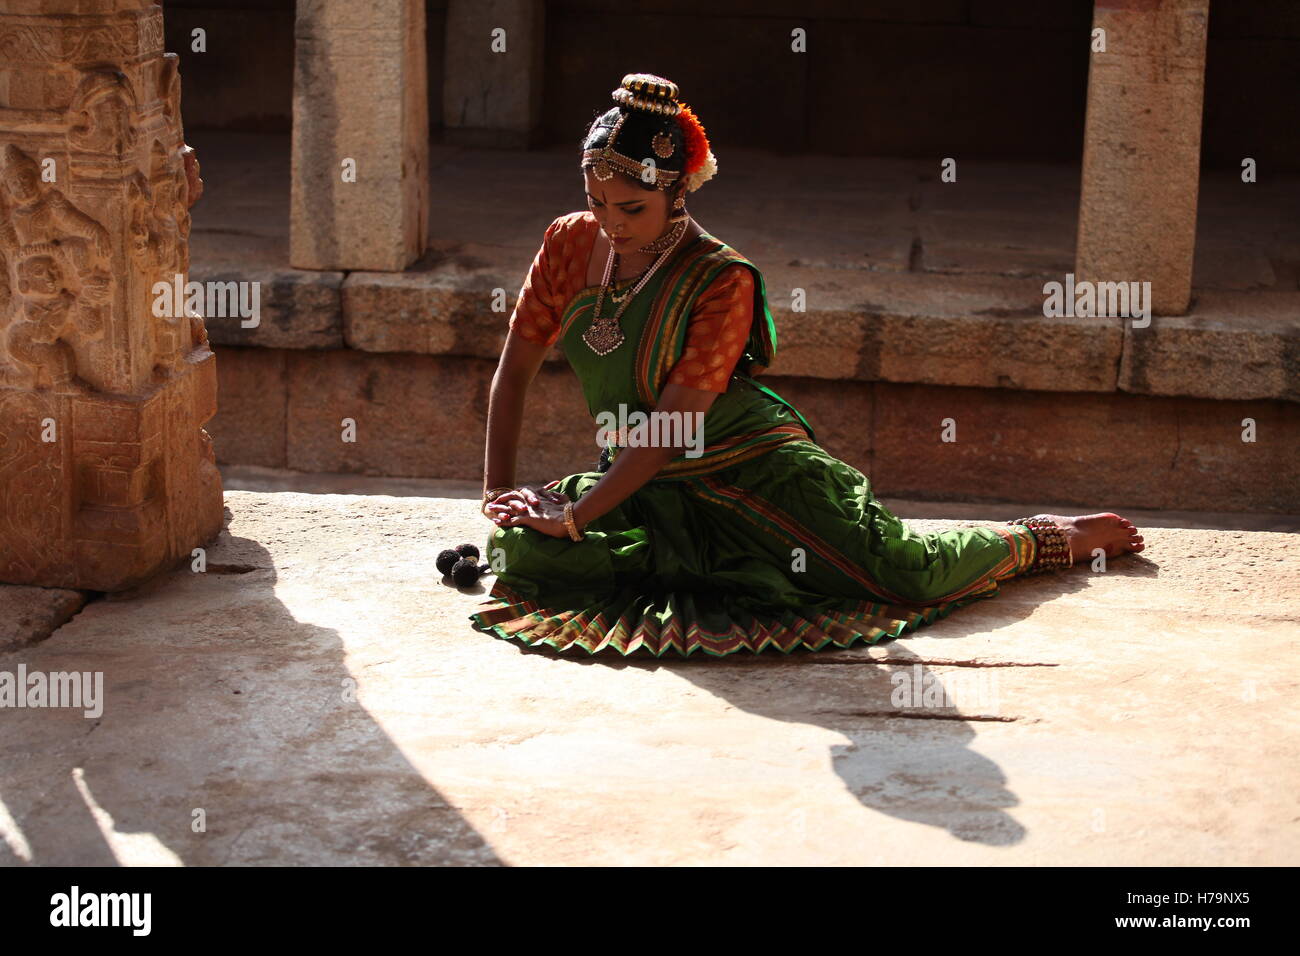 Kuchipudi è uno dei classici ballerina forme di india,dallo stato Andhra Pradesh.Qui il ballerino pone davanti a un tempio con le sculture Foto Stock